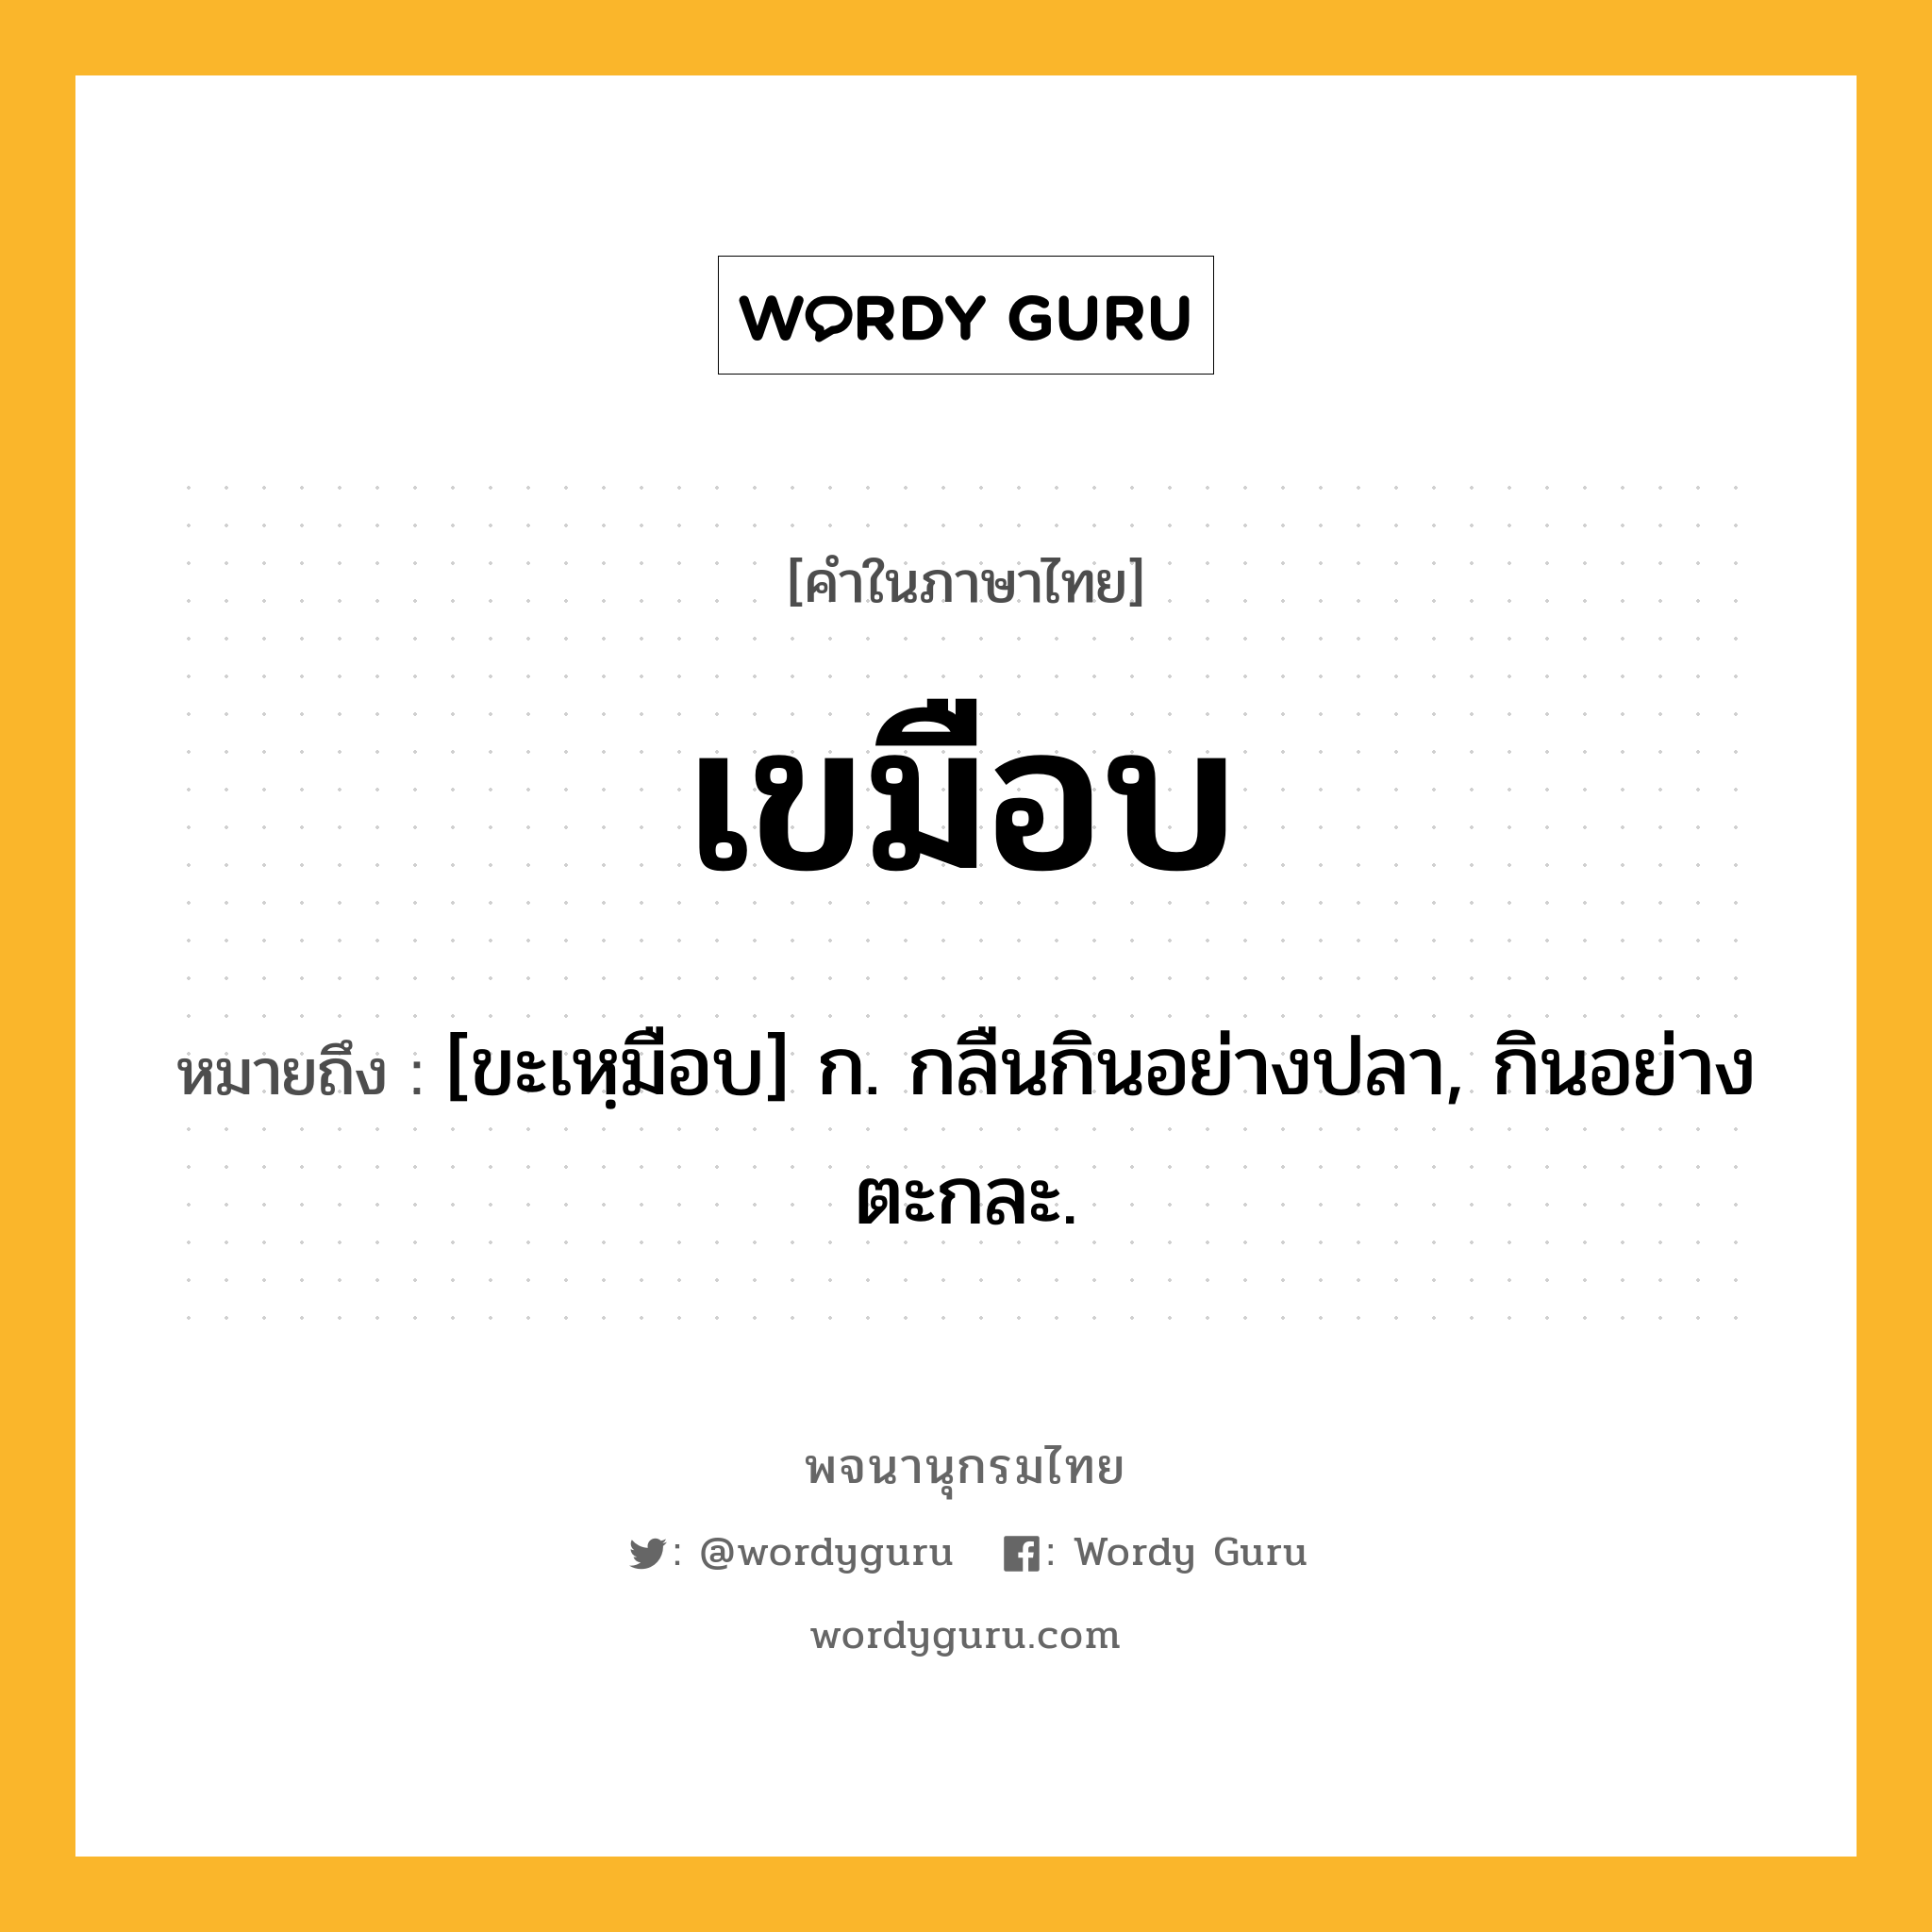 เขมือบ ความหมาย หมายถึงอะไร?, คำในภาษาไทย เขมือบ หมายถึง [ขะเหฺมือบ] ก. กลืนกินอย่างปลา, กินอย่างตะกละ.